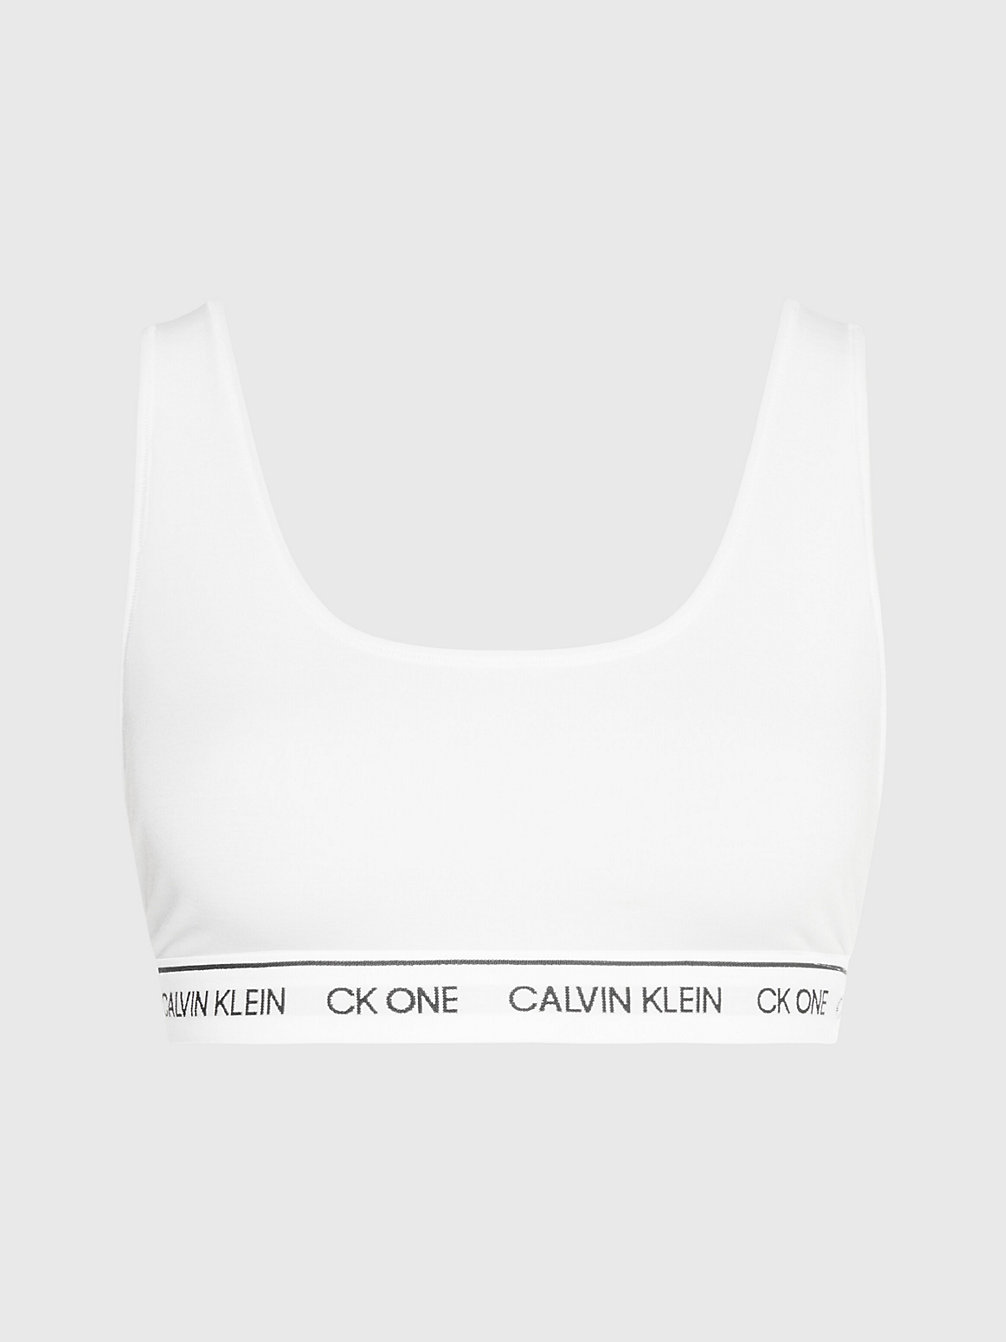 WHITE > Bralette – CK One Recycled > undefined Damen - Calvin Klein